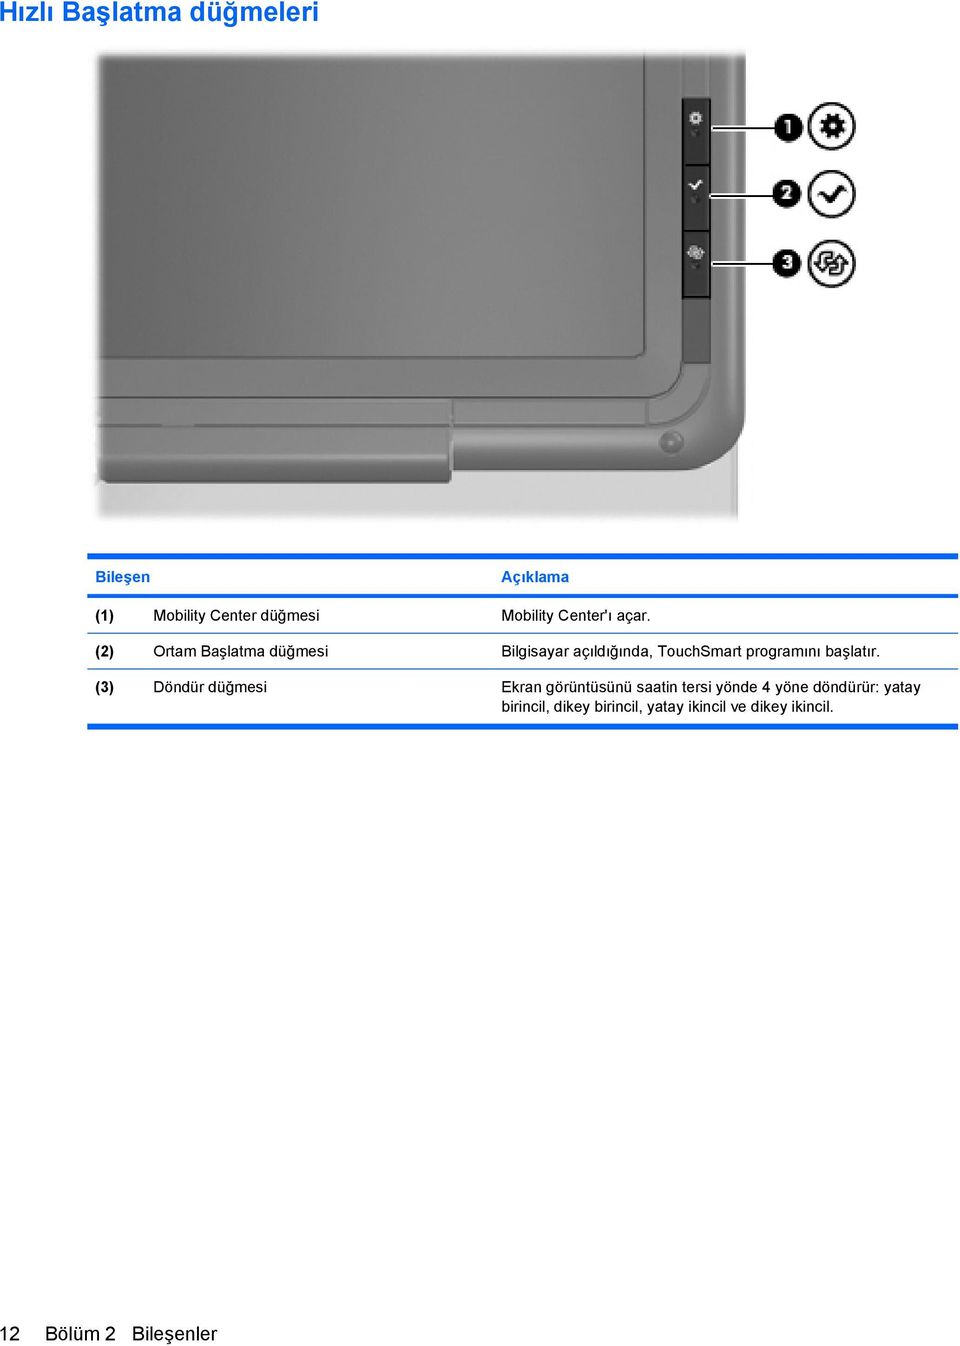 (2) Ortam Başlatma düğmesi Bilgisayar açıldığında, TouchSmart programını başlatır.